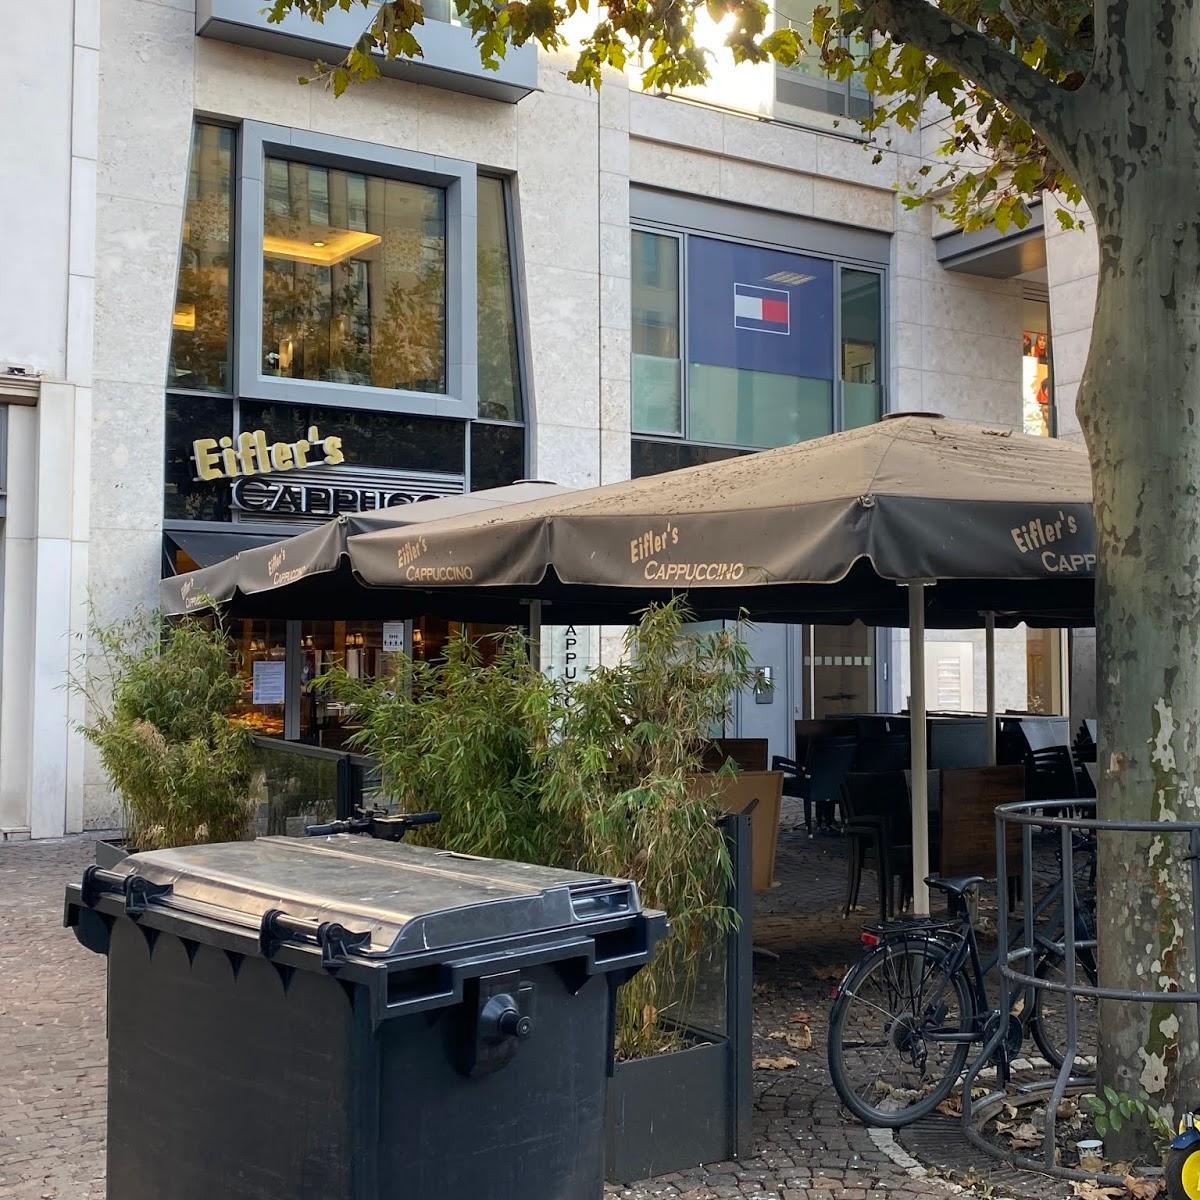 Restaurant "Der Bäcker Eifler Fressgasse" in Frankfurt am Main